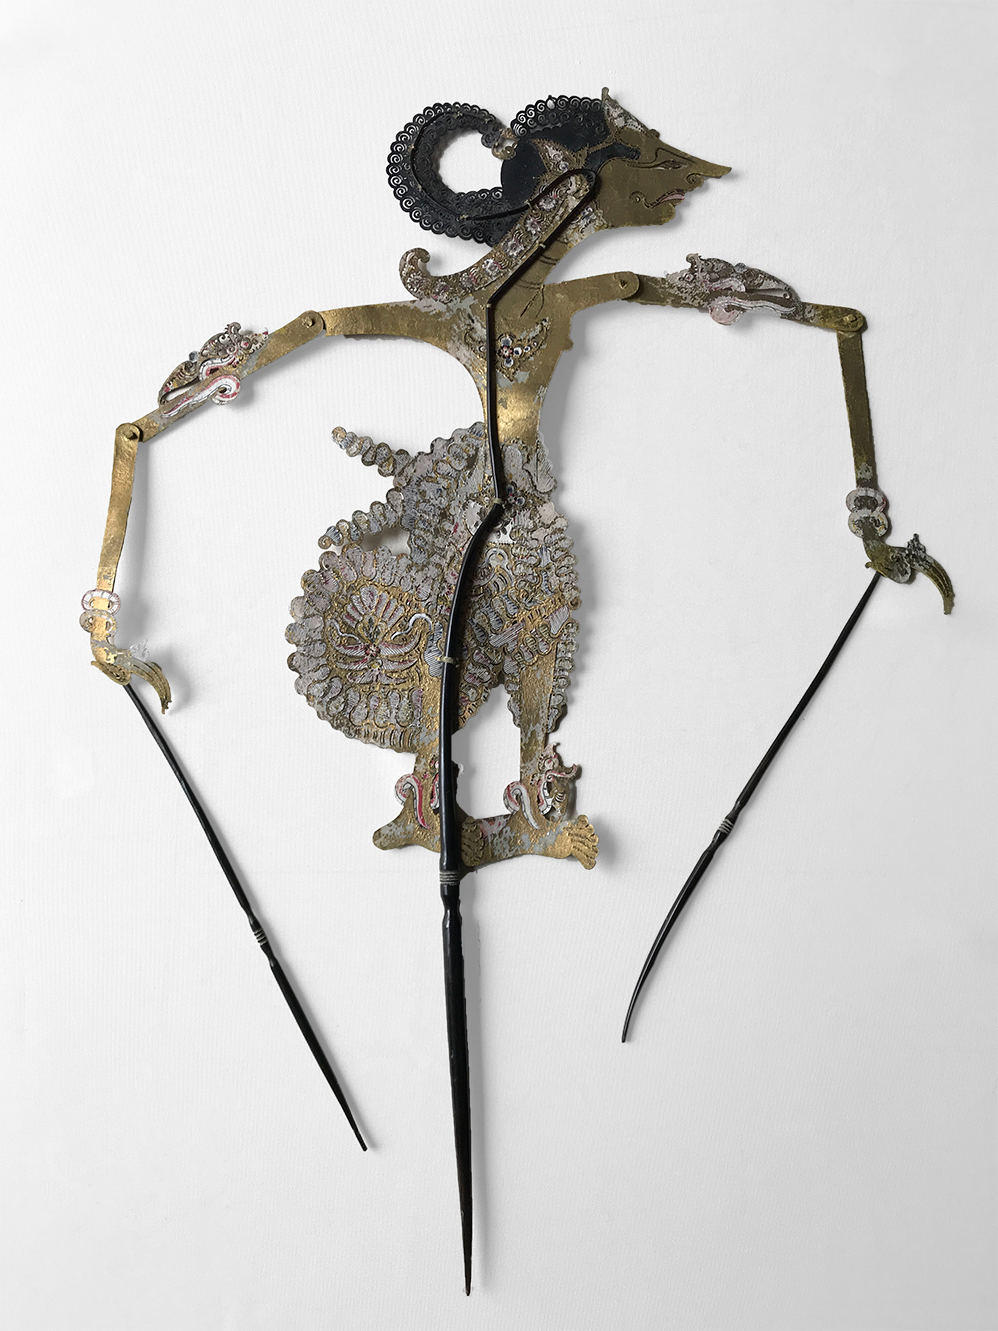 Marioneta de cuero calado y pintado que representa a un personaje de perfil. Pueden verse la varilla central que sostiene su cuerpo y las varillas en cada mano para realizar los movimientos de los brazos articulados.